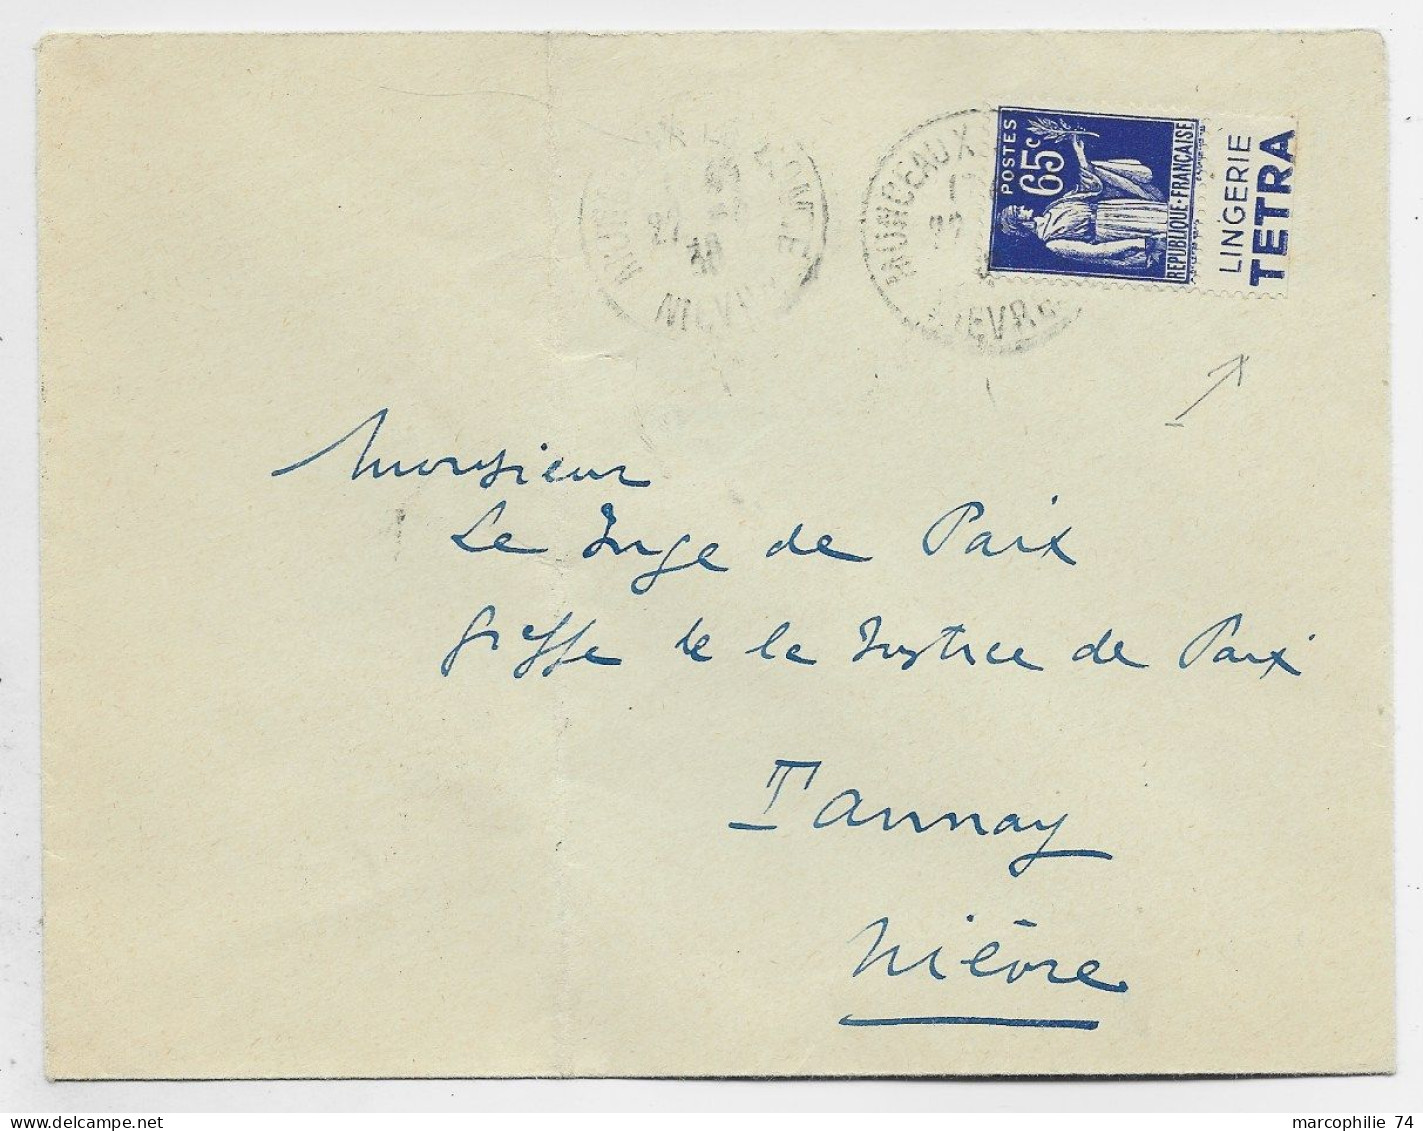 FRANCE PAIX 65C PUB LINGERIE TETRA LETTRE MONCAUX NIEVRE 1938 - Covers & Documents